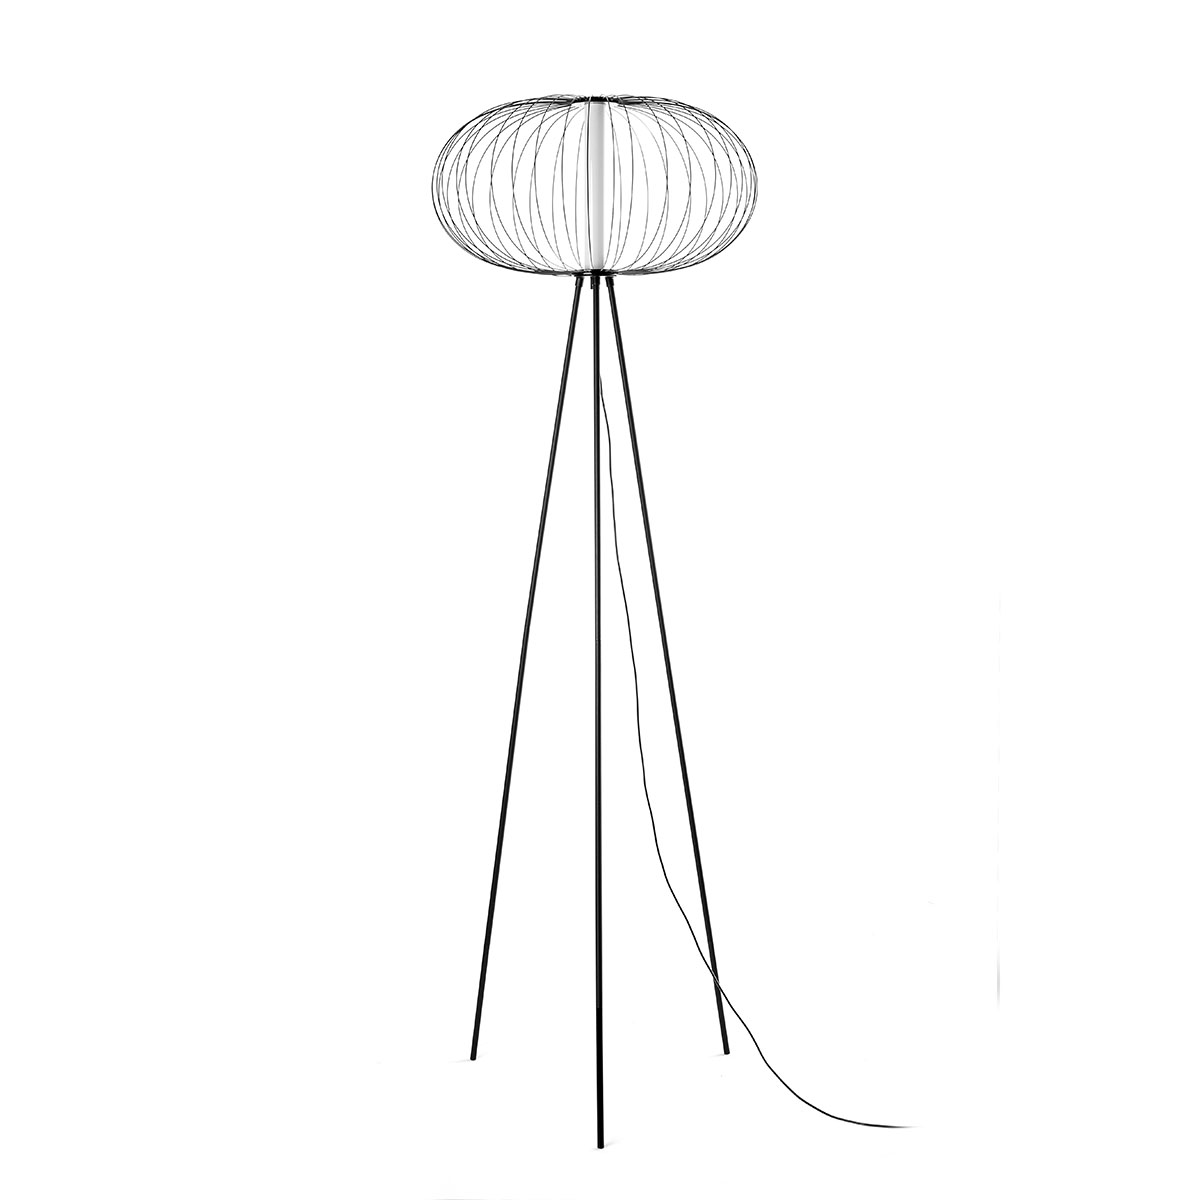 FL-18023 Atom Led Floor Lamp